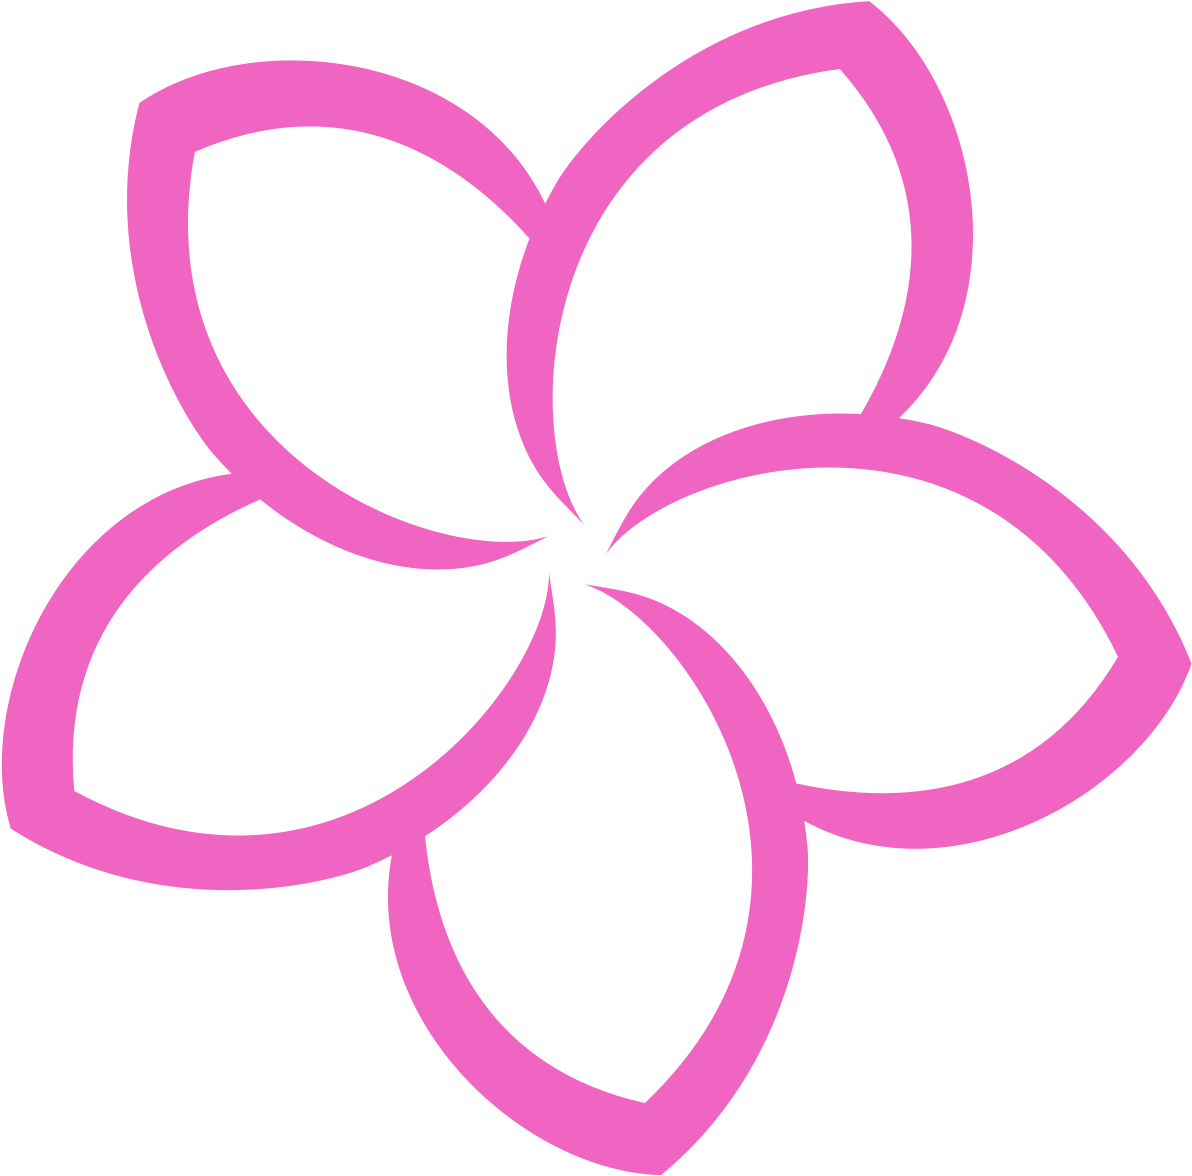 Цветы лого. Логотип цветок. Значок цветочек. Цветок иконка. Иконка цветка для логотипа.